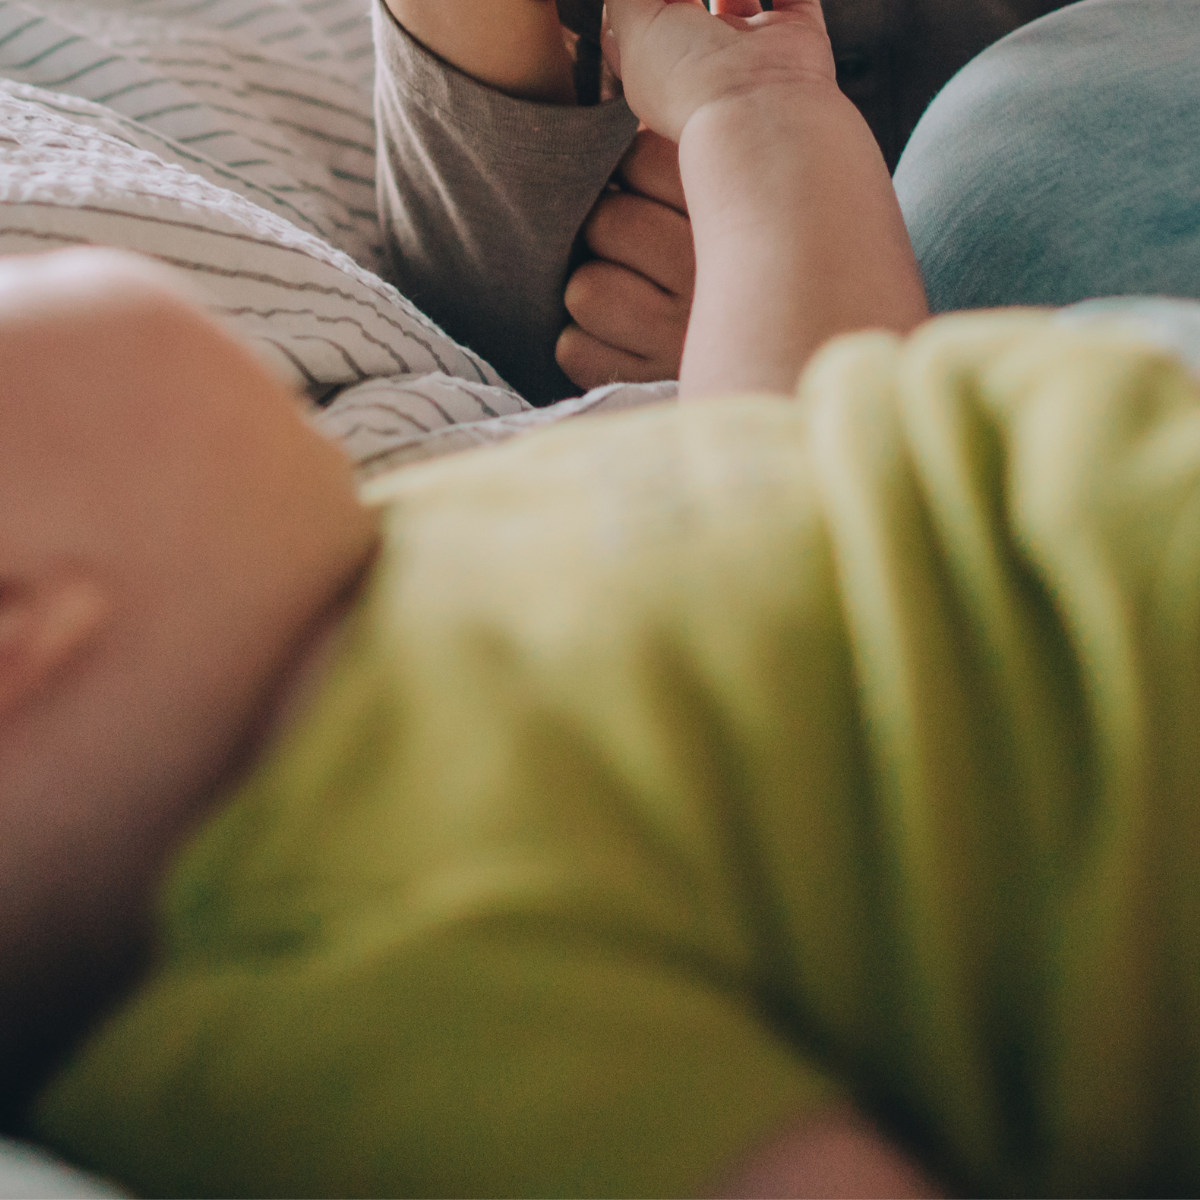 Pflegeroutine für Neugeborene – was brauchen die Kleinen wirklich?